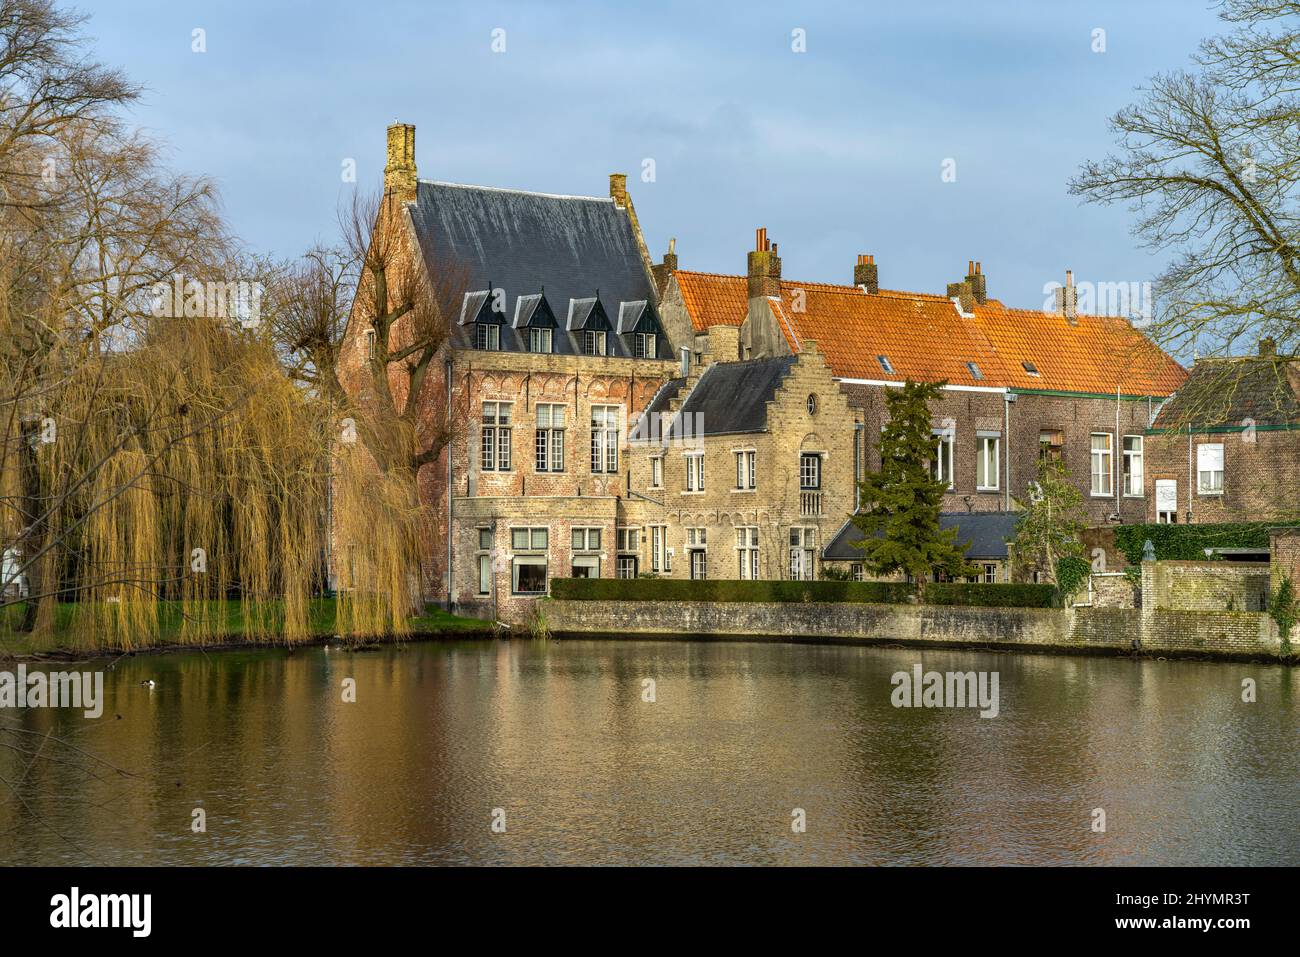 Am Minnewewater See in Brügge, Belgien | Lago Minnewewater in Bruges, Belgio Foto Stock